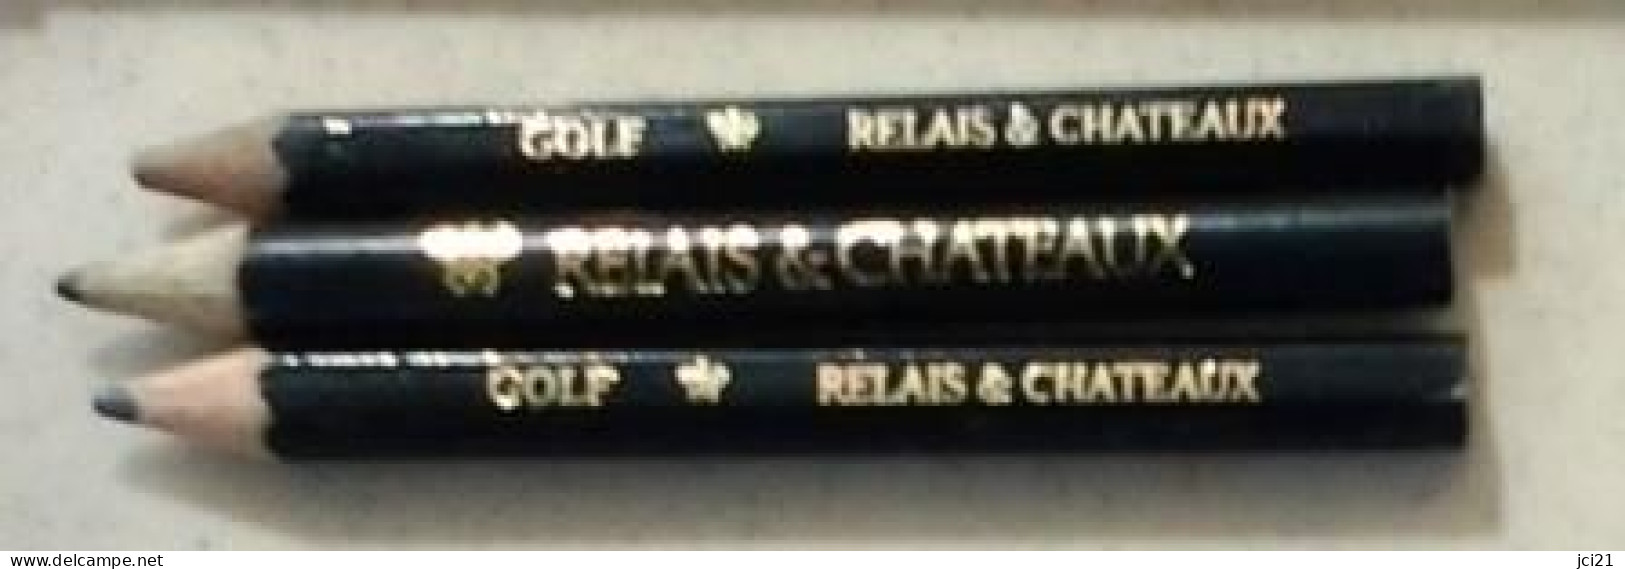 Lot De 3 Crayons " RELAIS & CHATEAUX Et GOLF RELAIS & CHATEAUX " (Bte Stylo) _Di397 - Penne